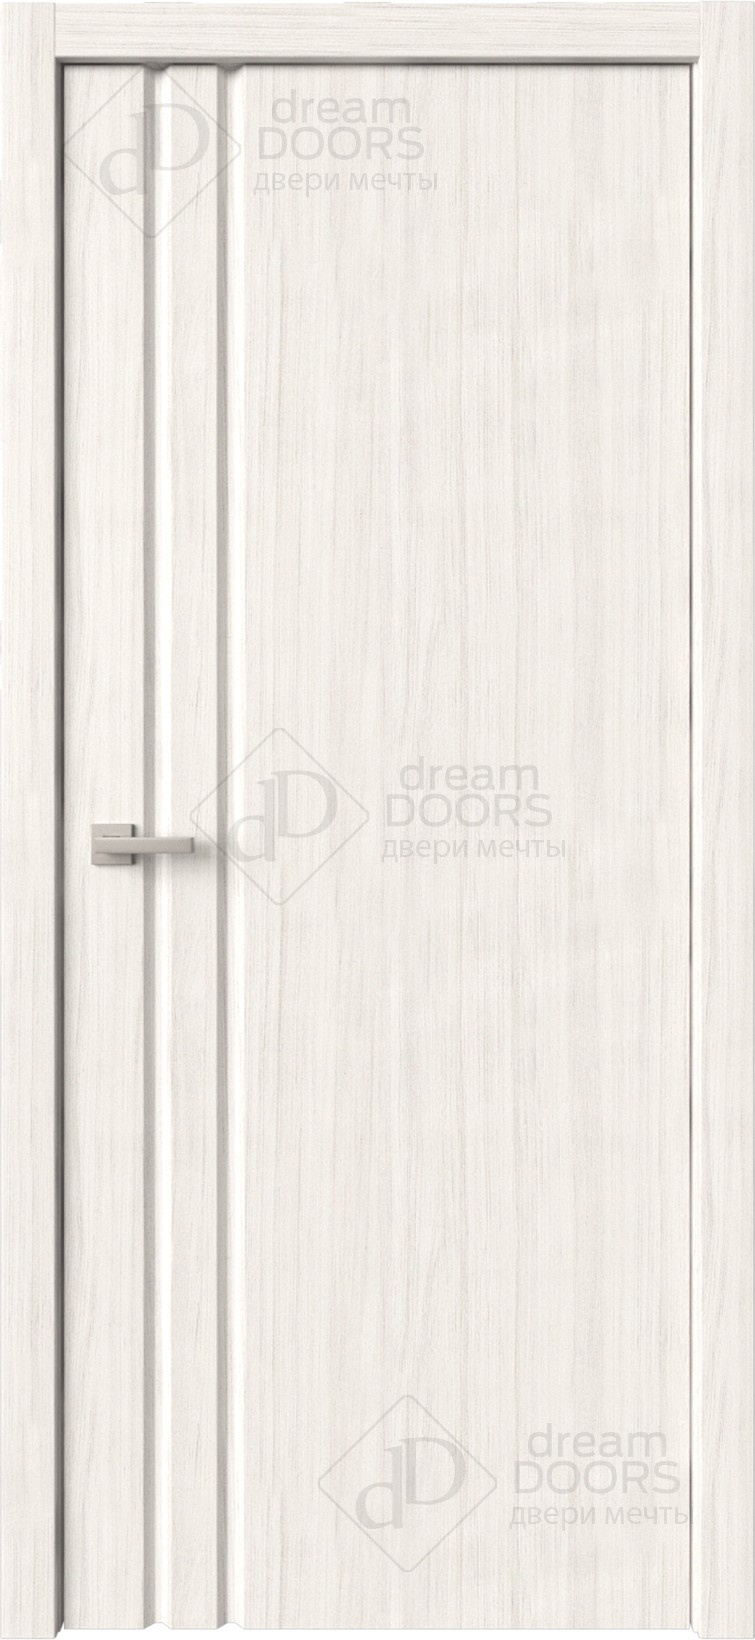 Dream Doors Межкомнатная дверь Стиль 1 узкое ПГ, арт. 6269 - фото №10